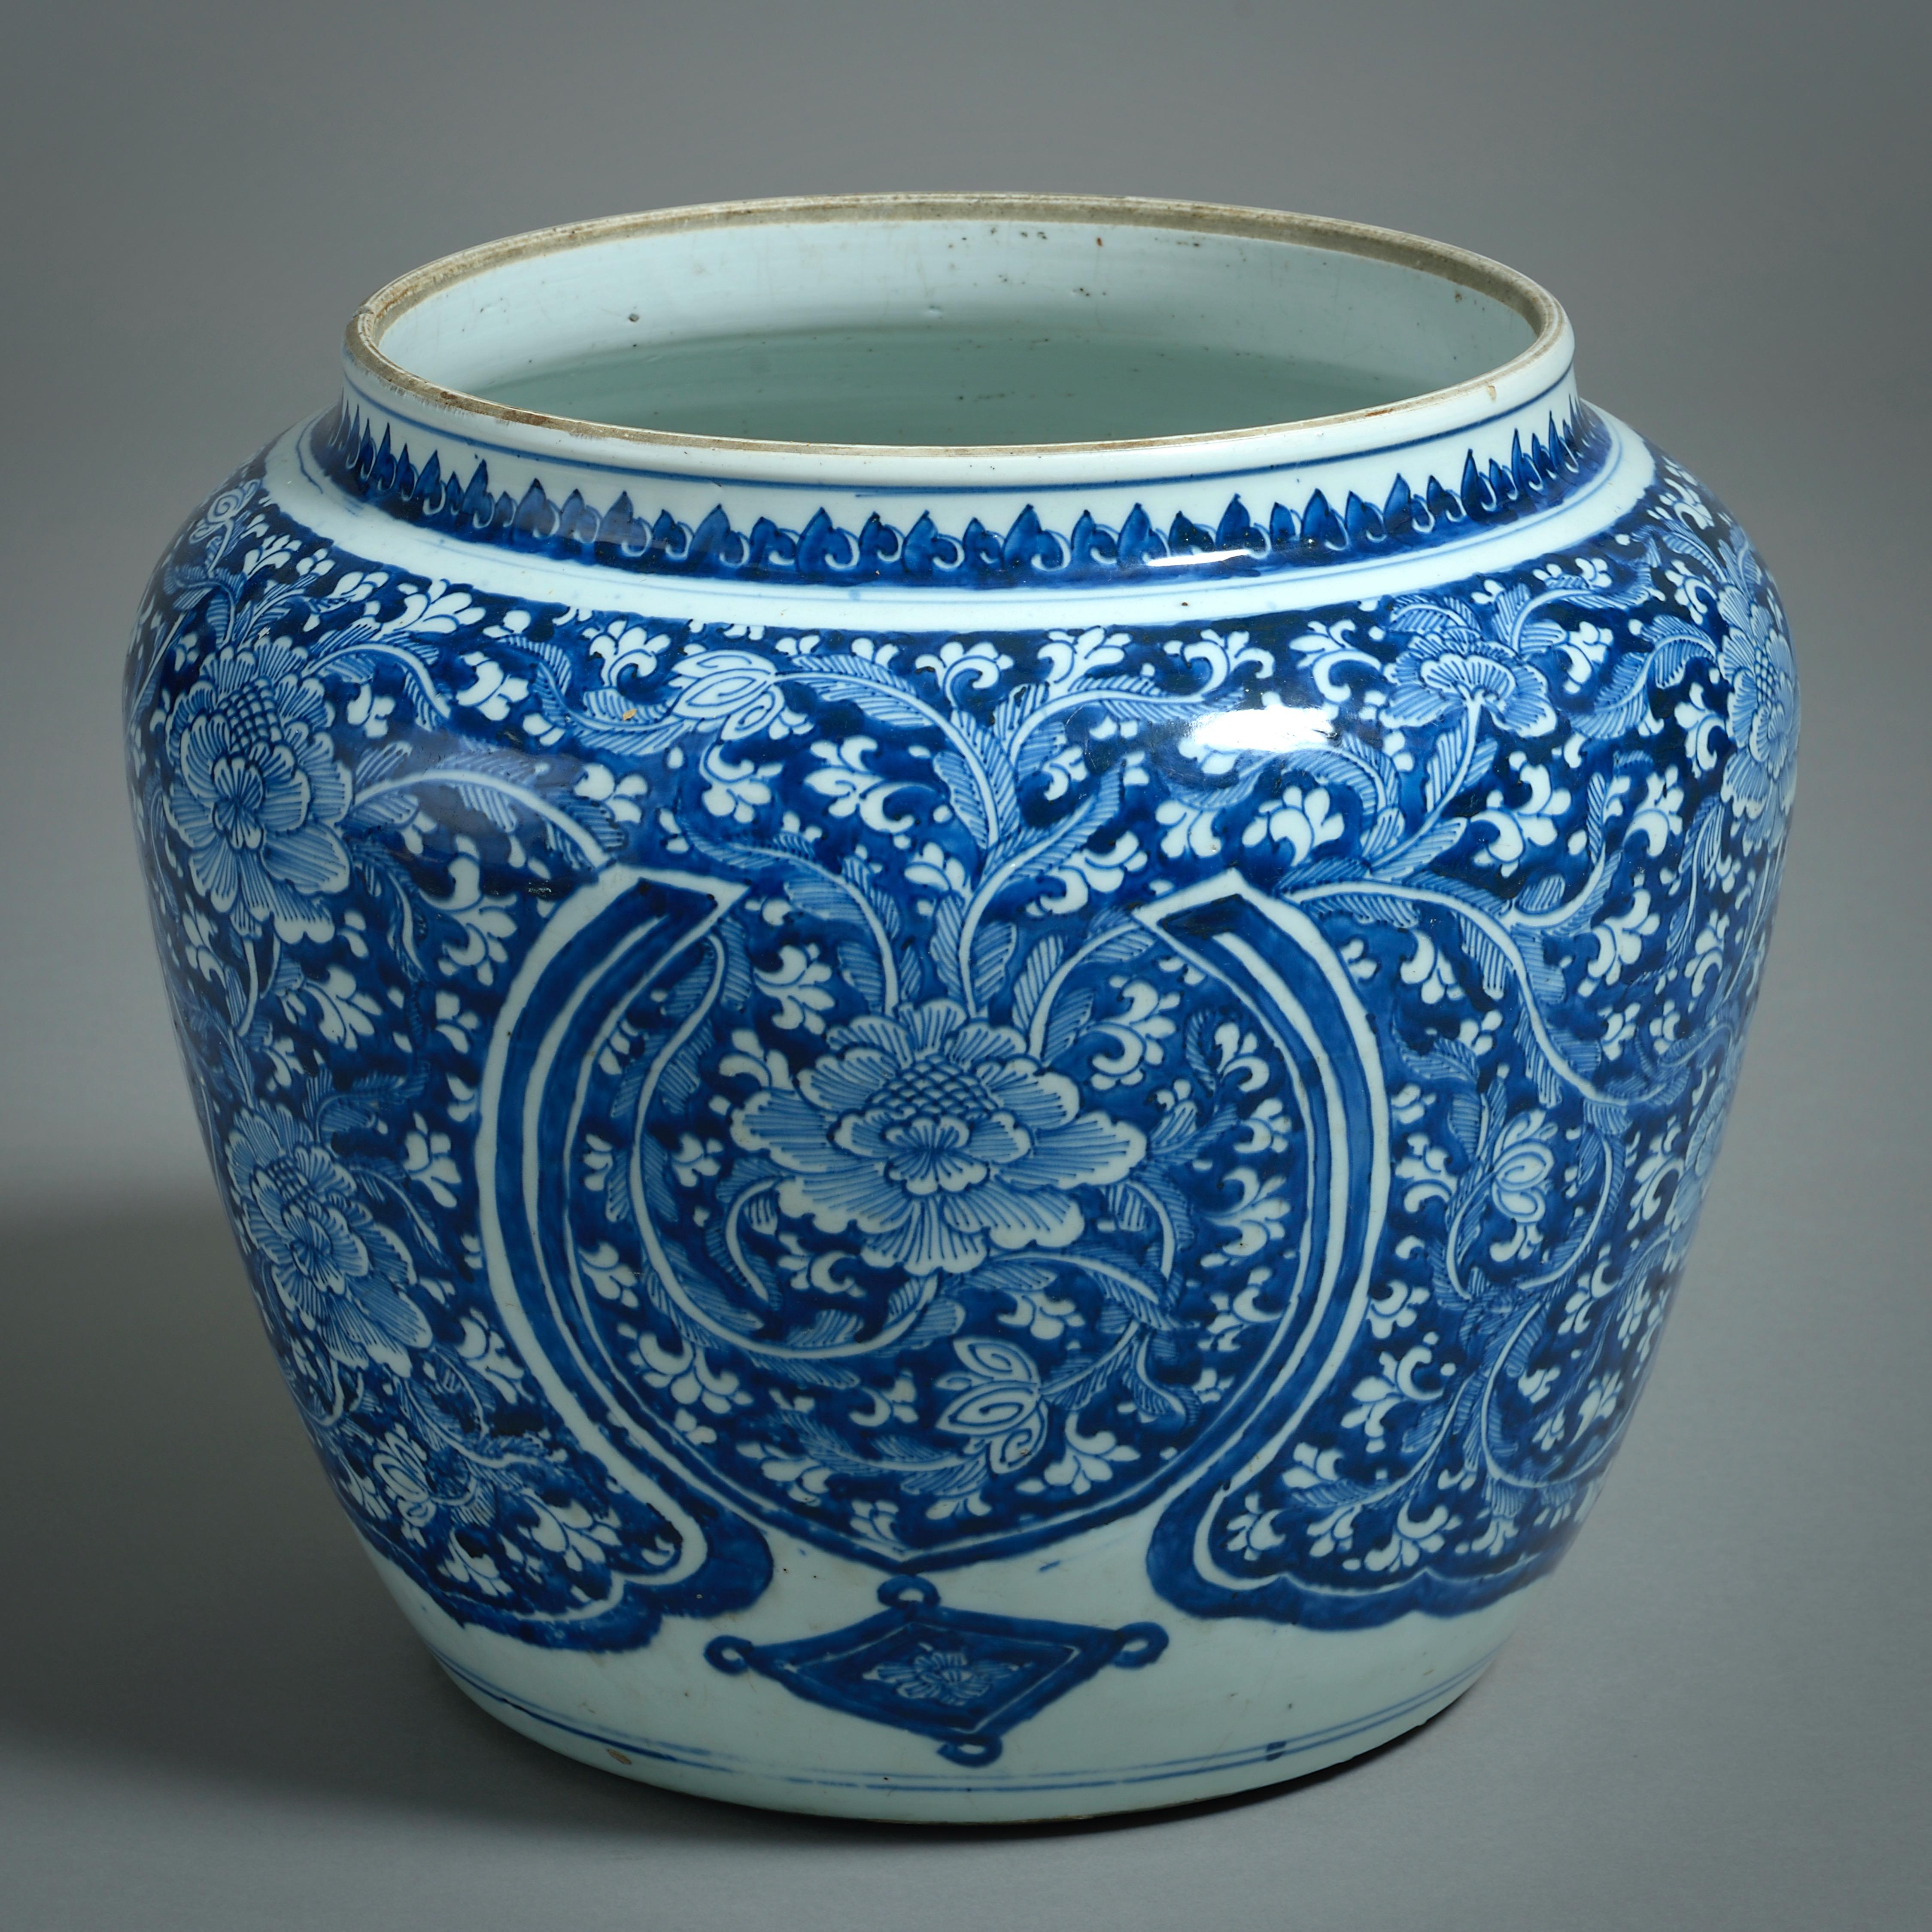 Grande jarre Kangxi en bleu et blanc décorée de pivoines et de rinceaux, seconde moitié du XVIIe siècle.